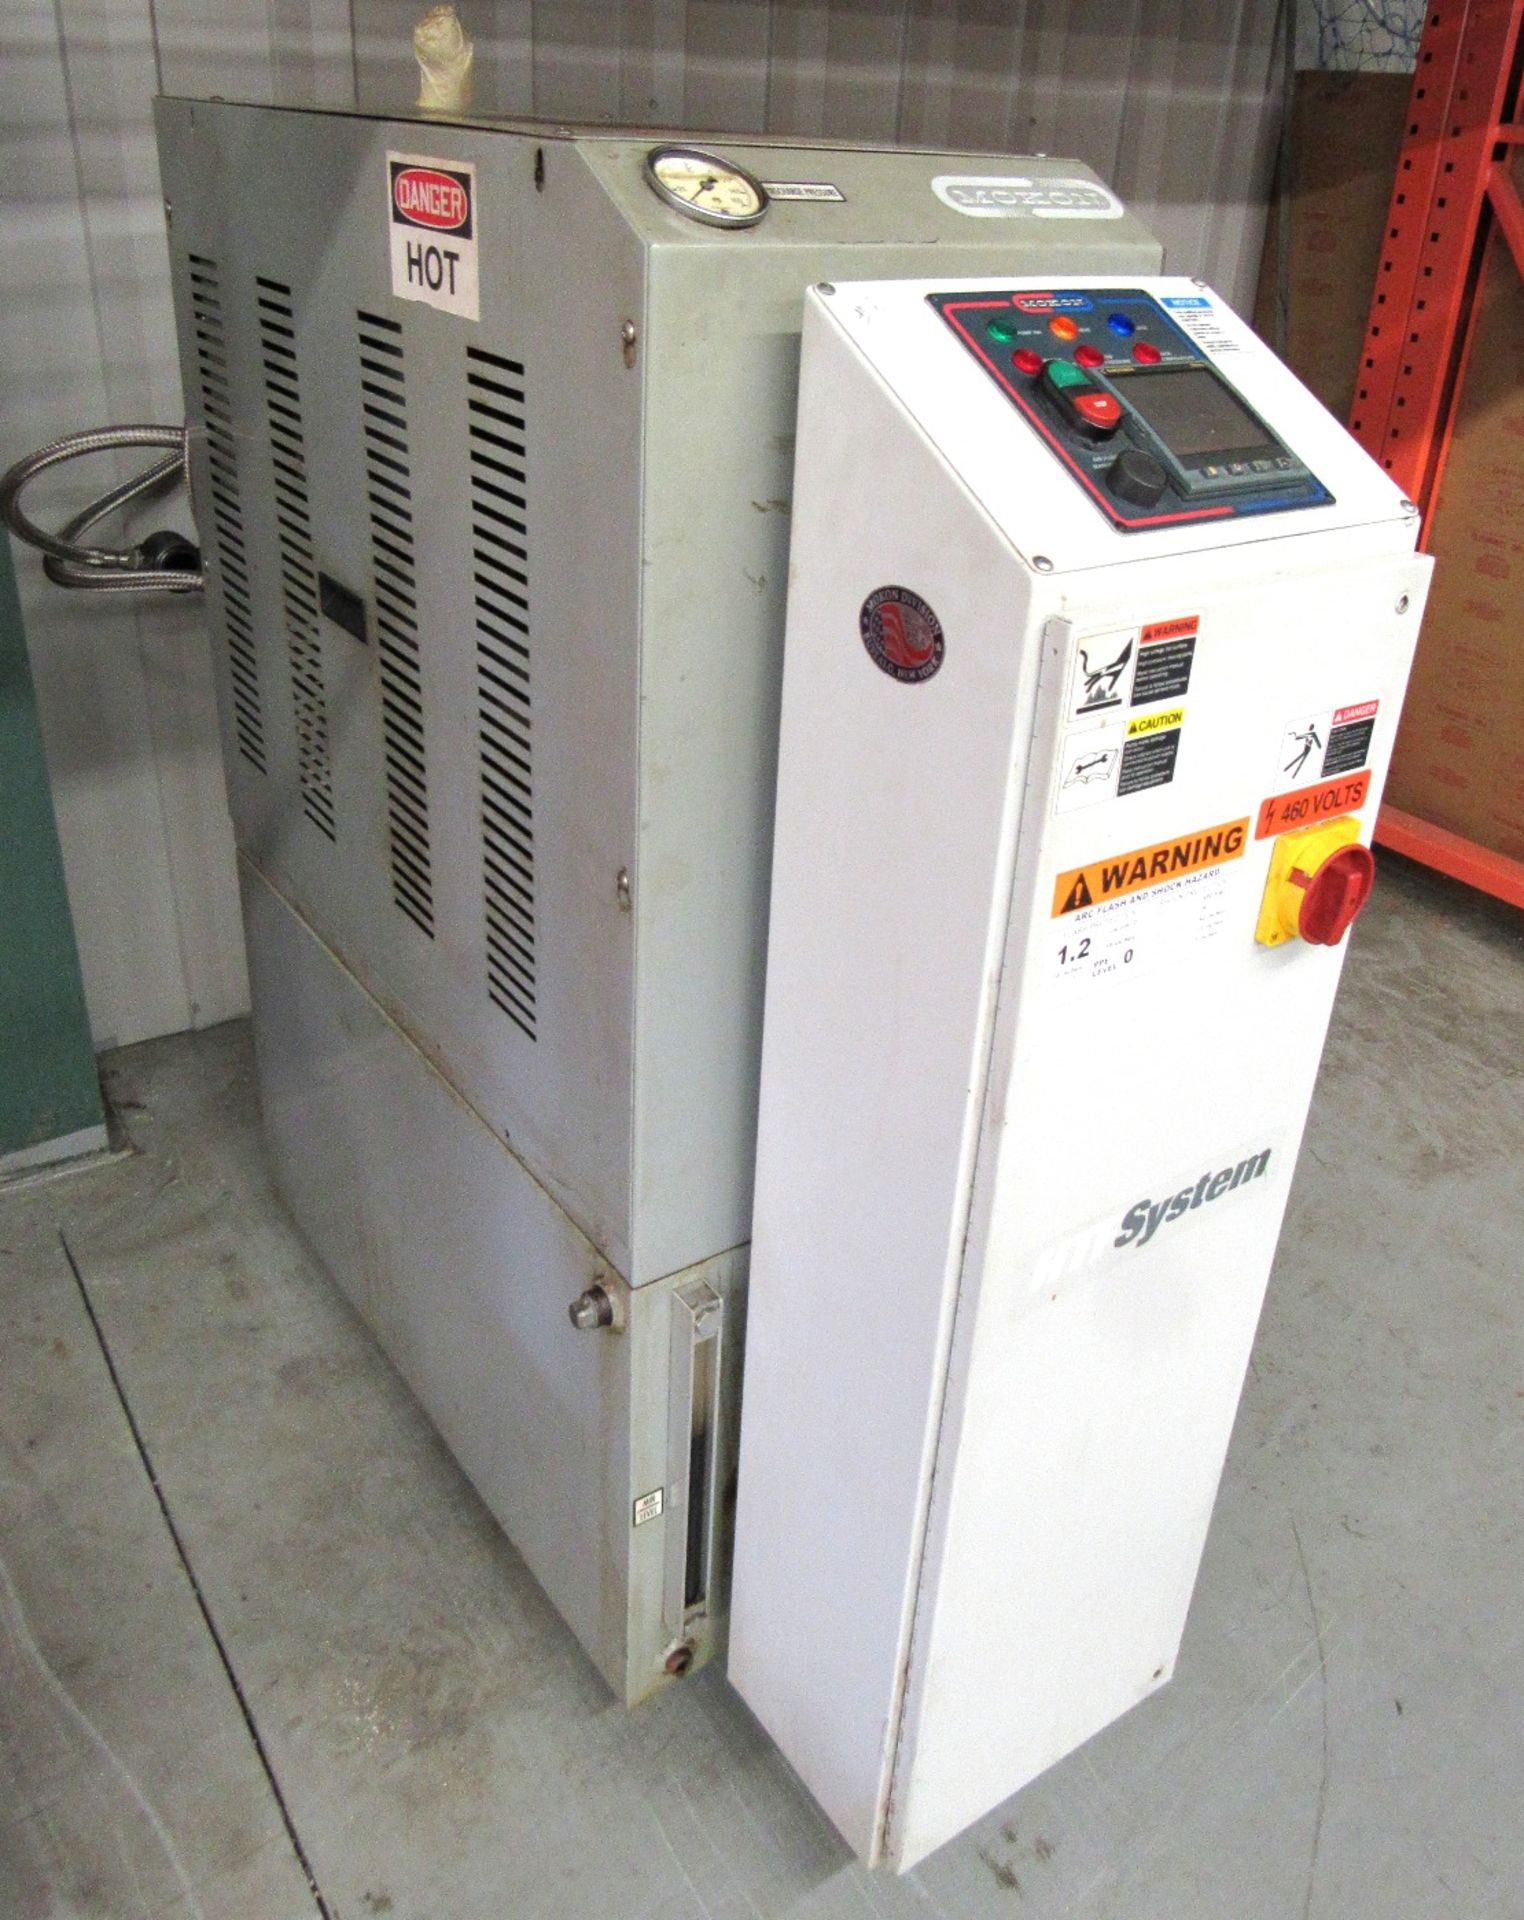 Mokon Single Zone Hot Oil Temperature Control Unit - S/N 62344 (New 2000)